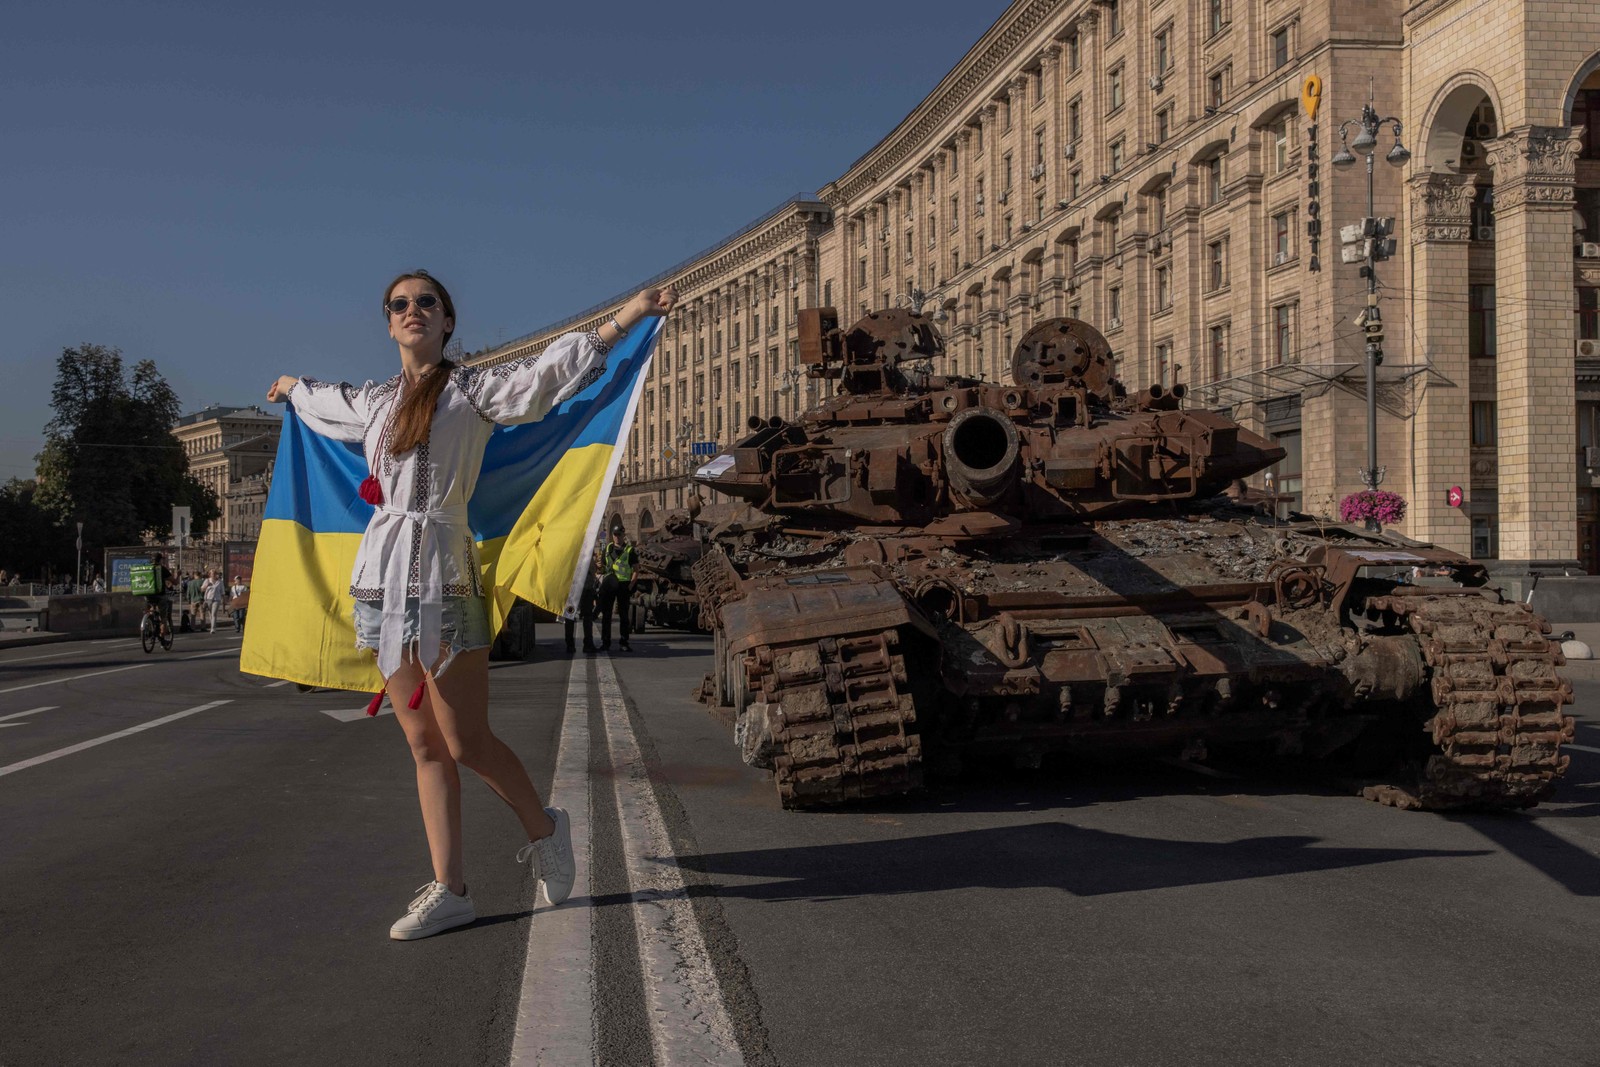 Mulher posa para fotos segurando a bandeira ucraniana ao lado de veículos militares russos destruídos em Kiev — Foto: Roman Pilipey / AFP